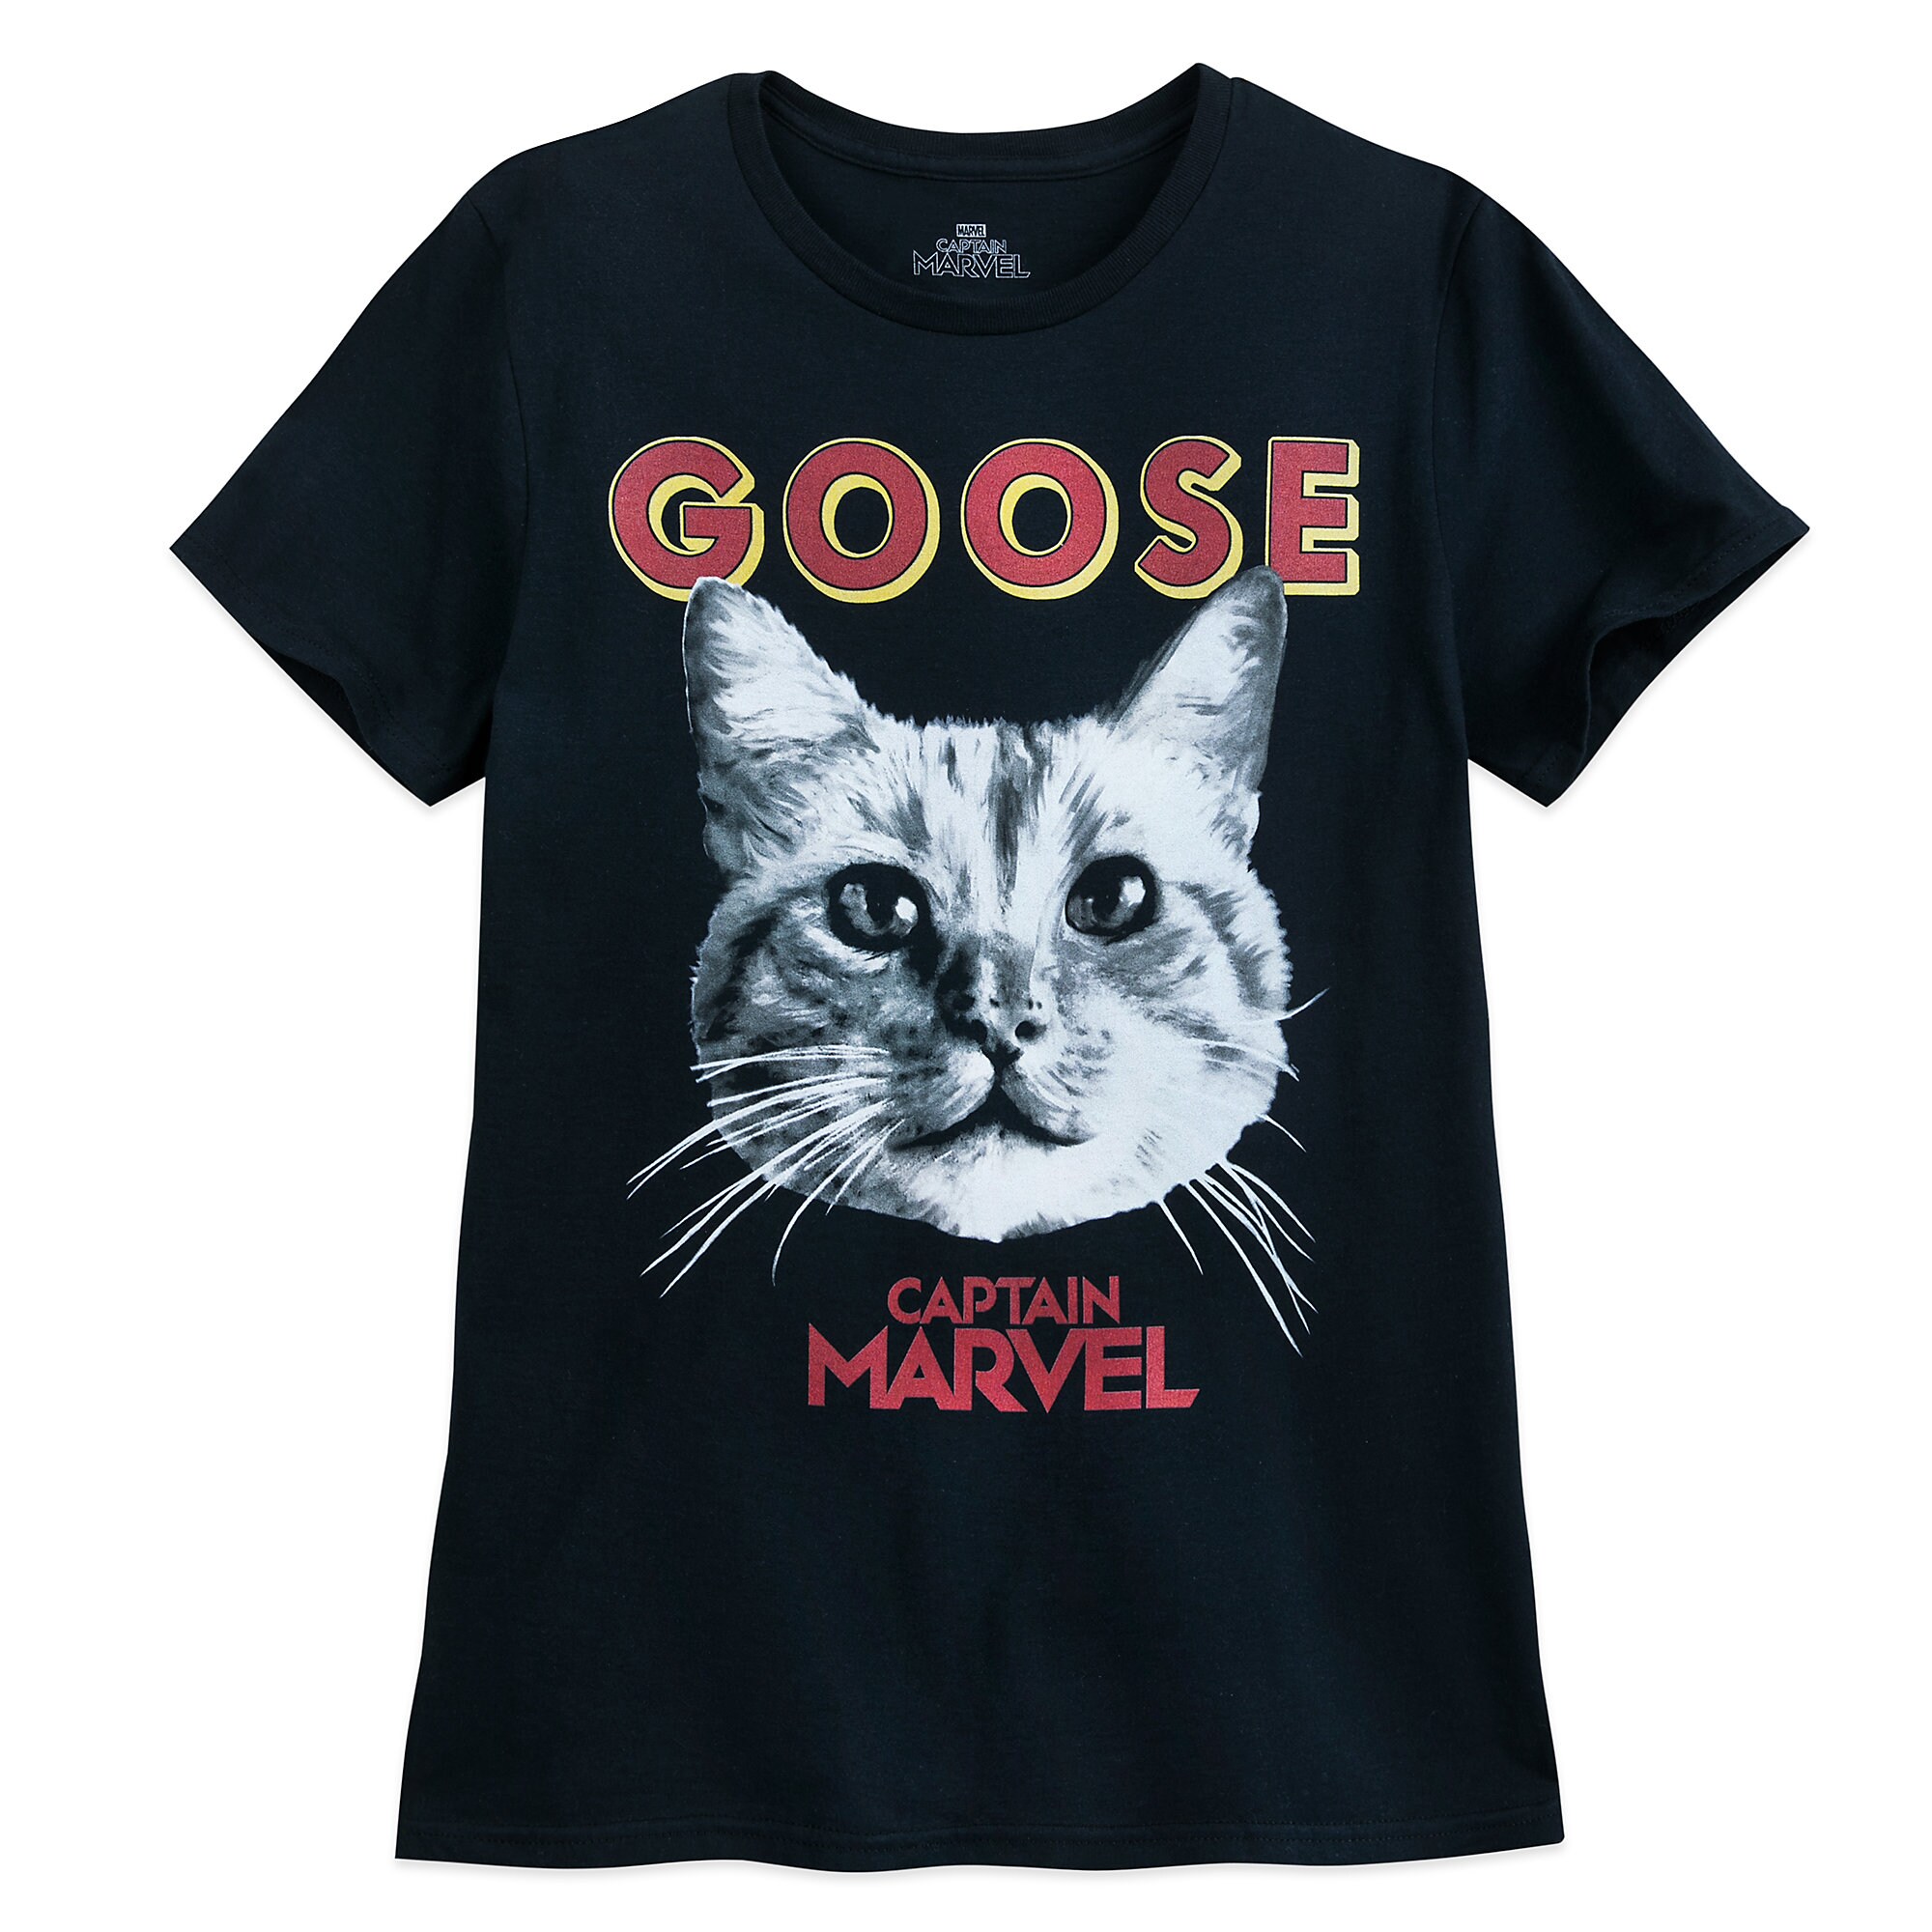 Goose T-Shirt for Men - Marvel's Captain Marvel